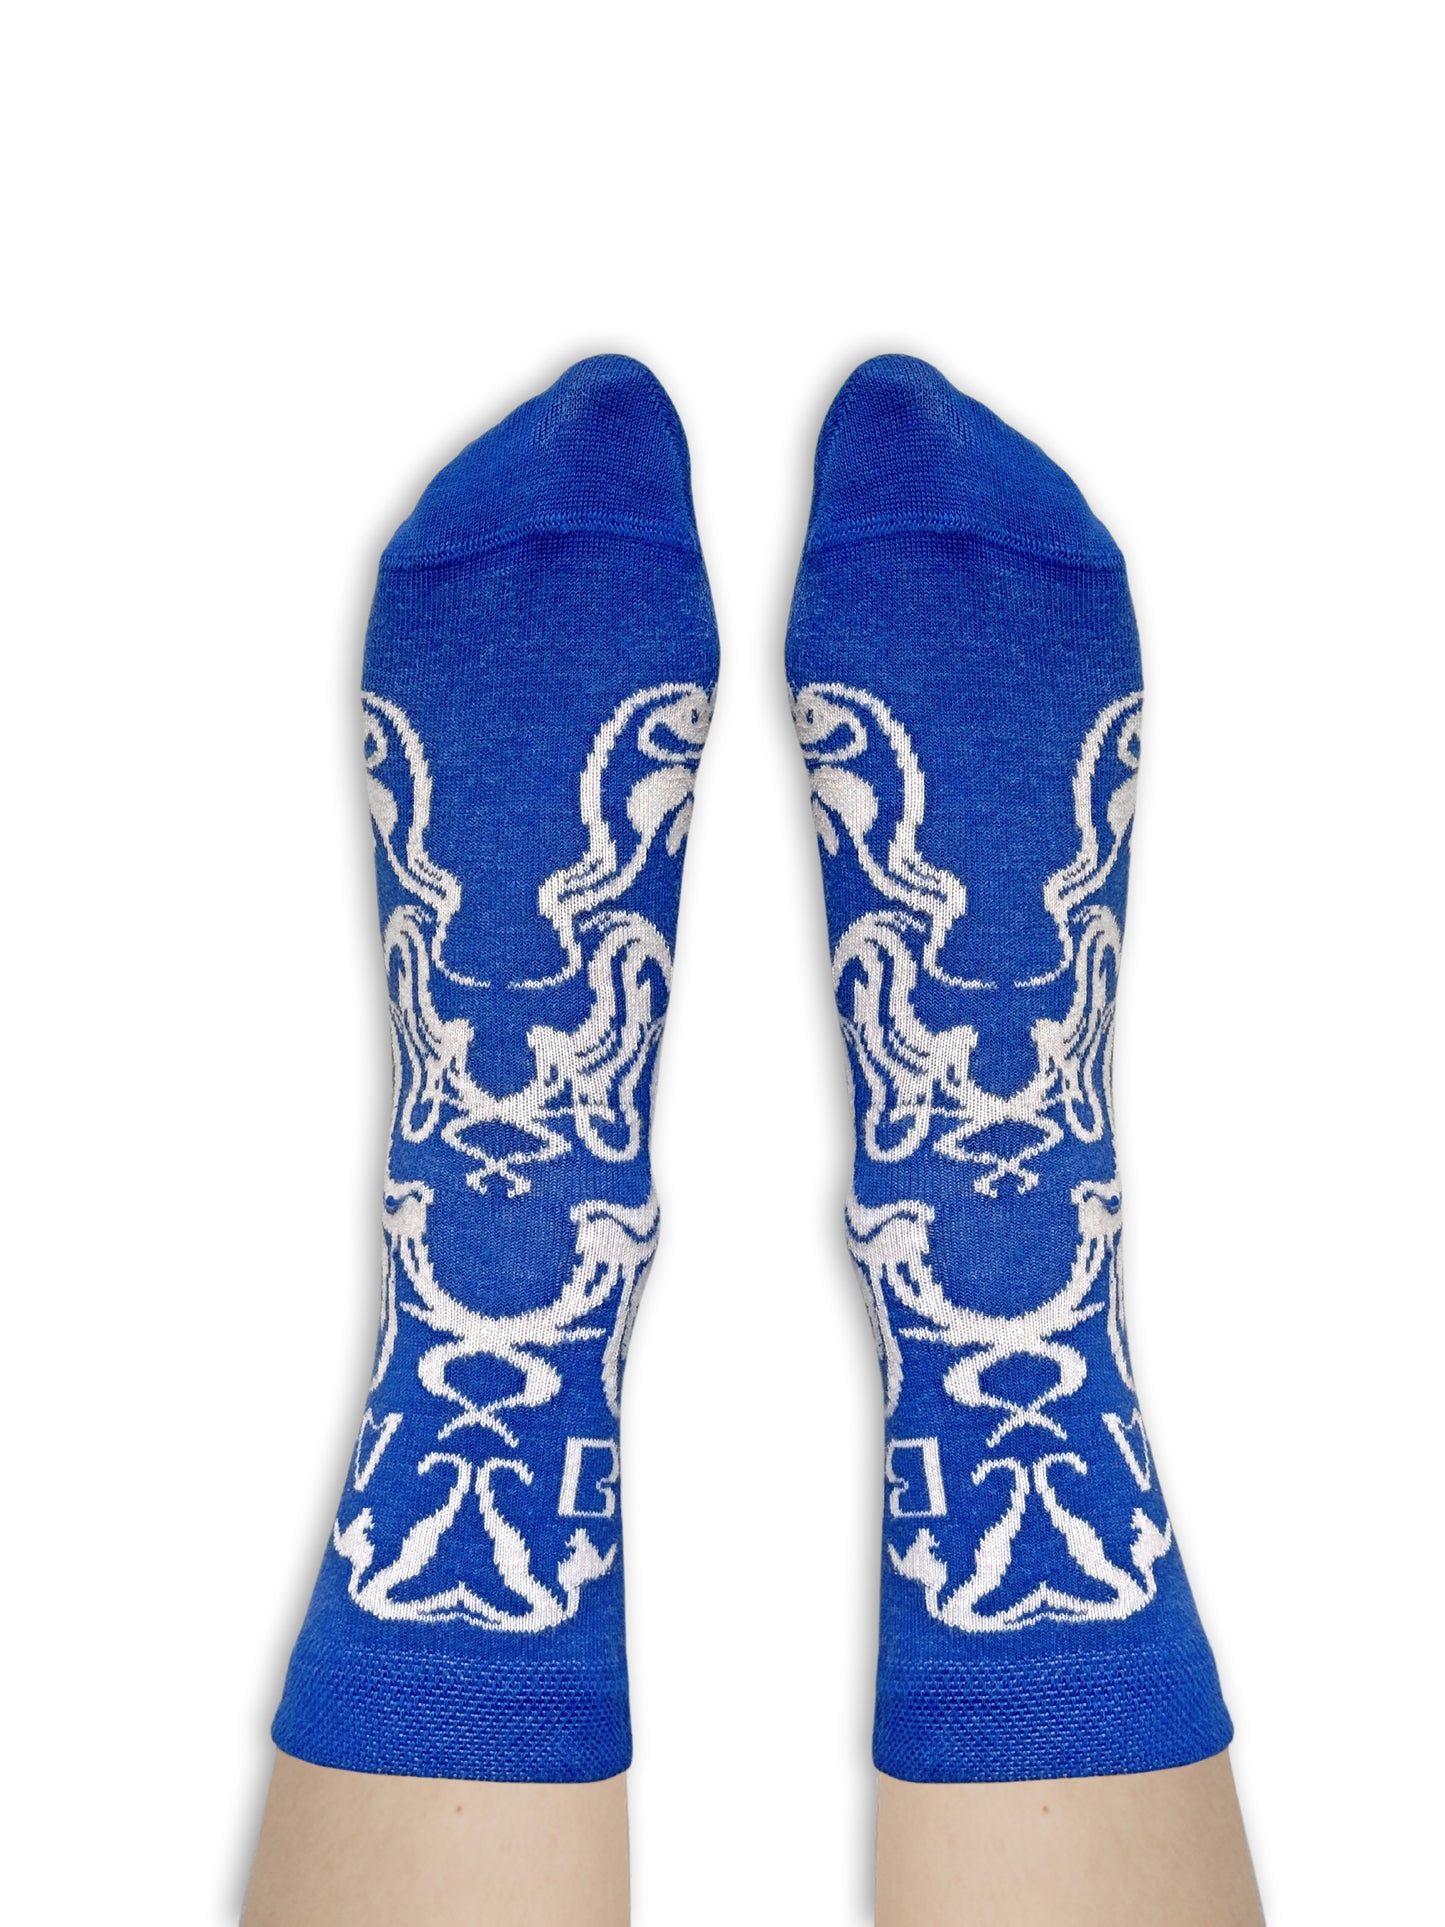 Charapé // blue-white socks